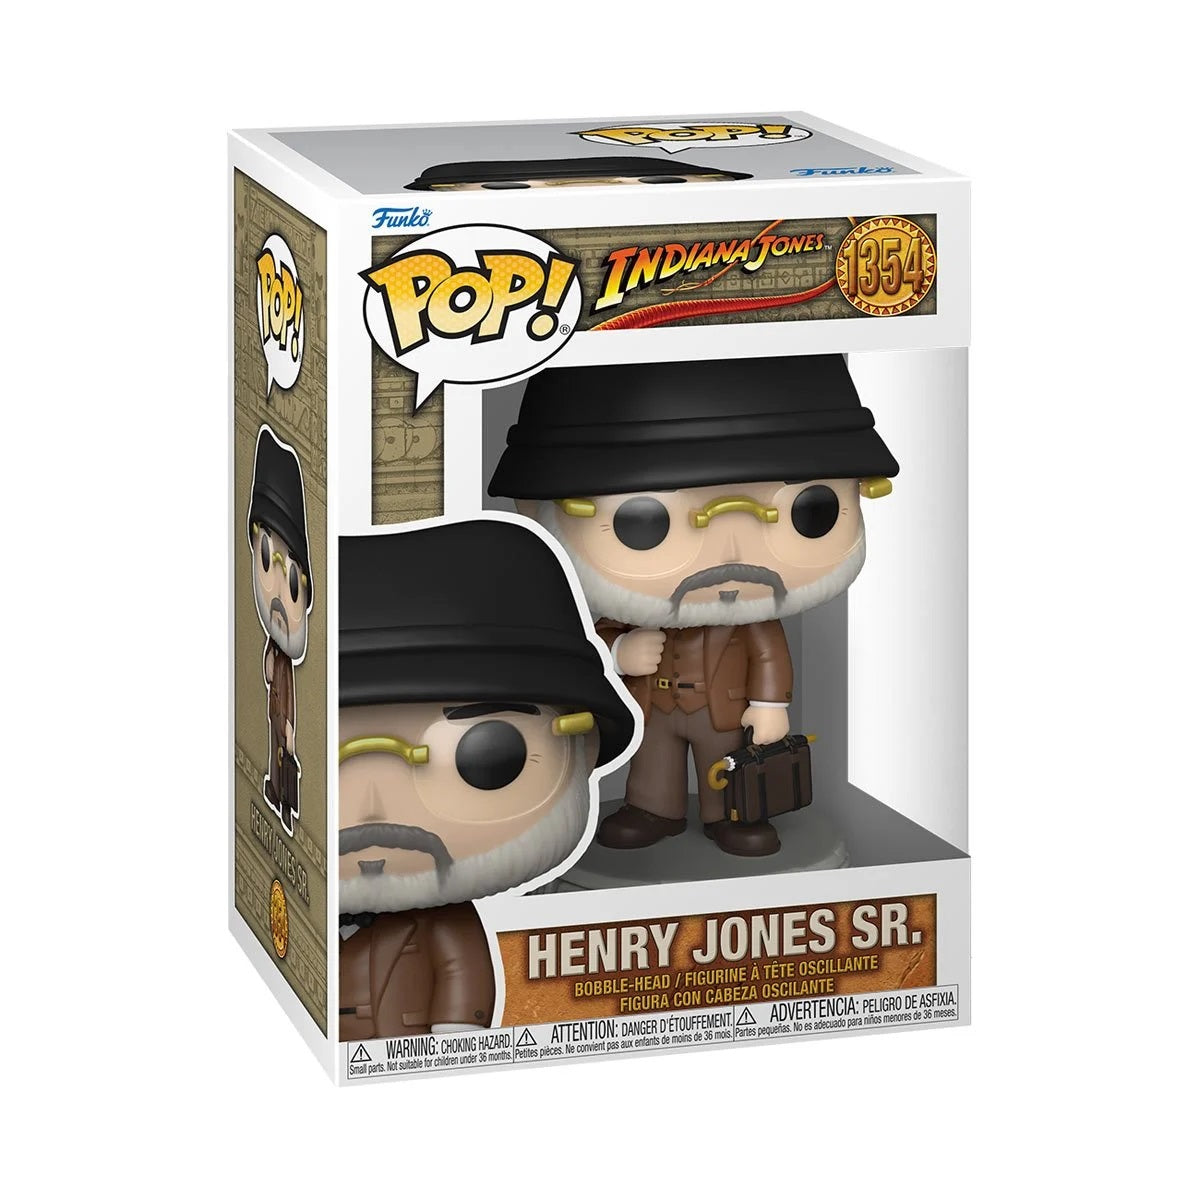 Henry Jones Sr. Pop! Vinyl Figure #1354 - Unearth the Last Crusade Adventure with Indiana Jones